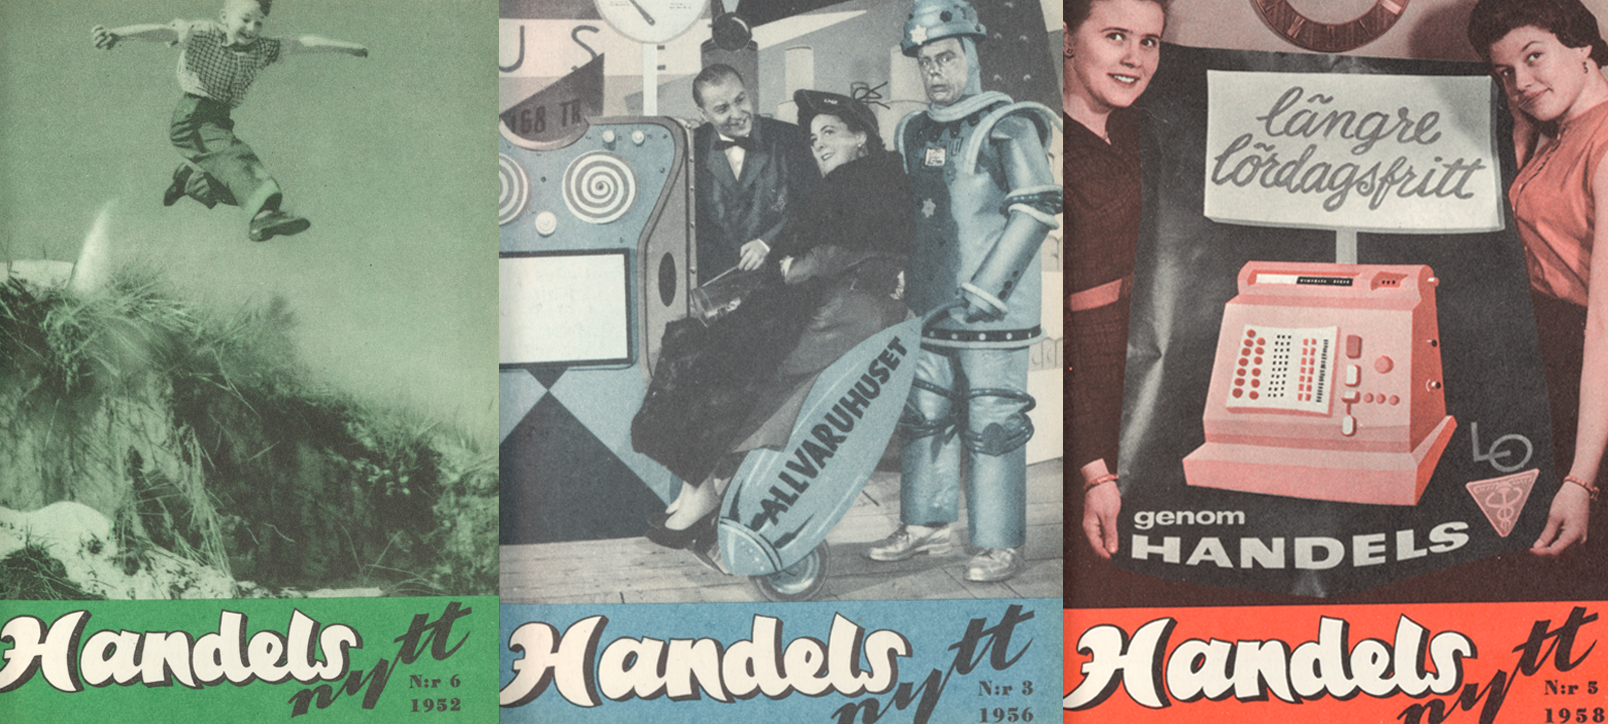 Tre tidningsomslag med texten "Handelsnytt". På ett syns ett barn som hoppar, på ett annat en robot i ett varuhus och på det tredje två leende kvinnor.